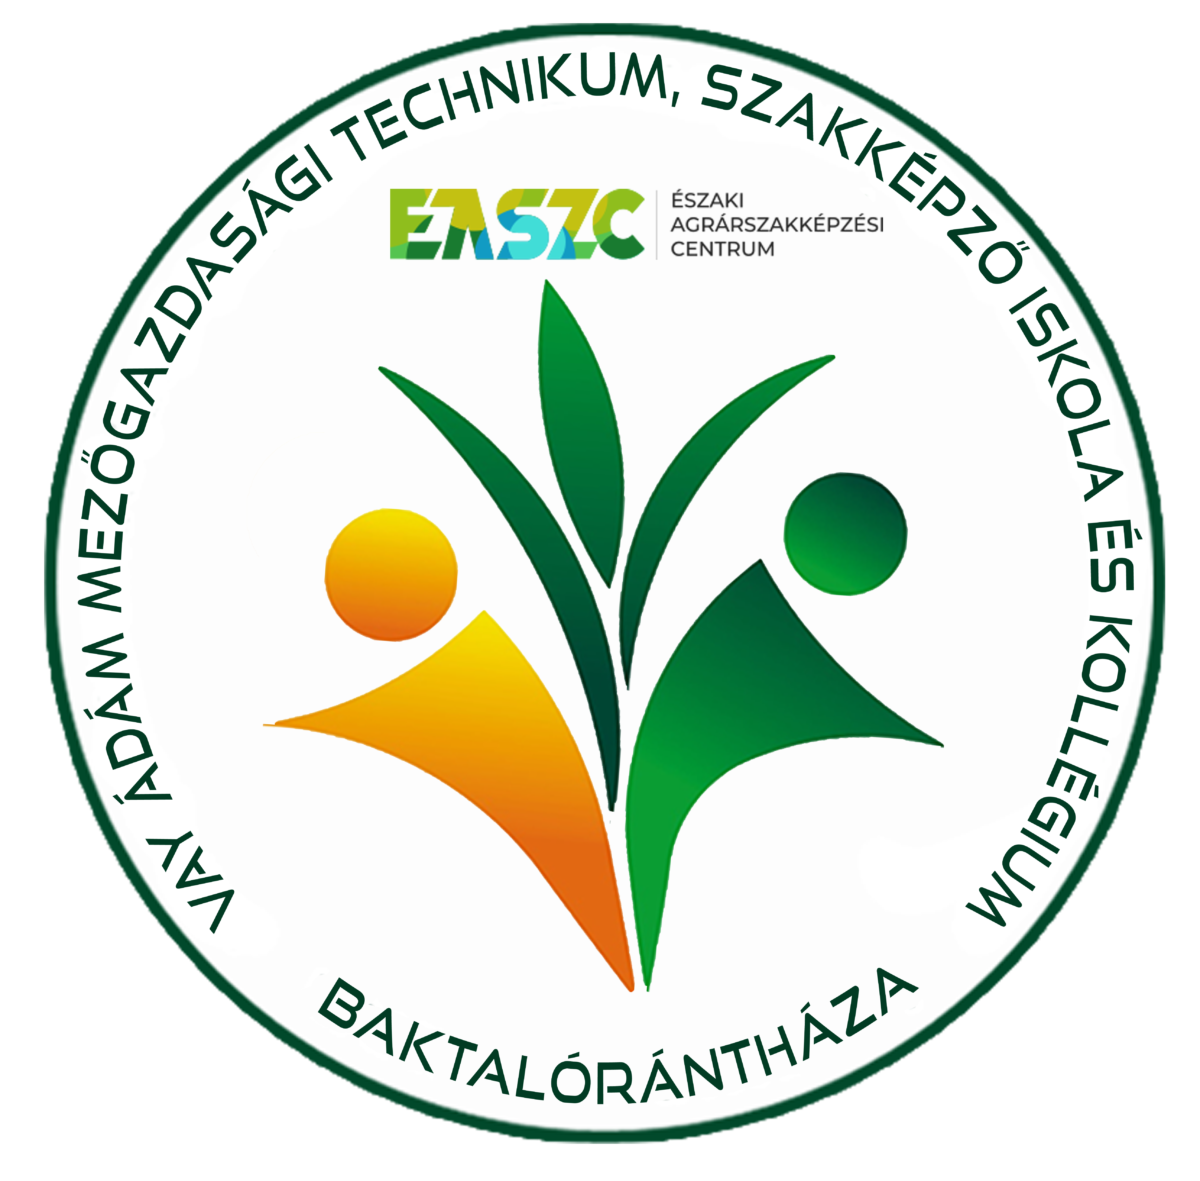 Easzc kör alakú logója, két stilizált emberalaktal zöld és narancssárga növényi motívumokban, körülötte a baktalórántházi oktatási központot azonosító magyar szöveg.